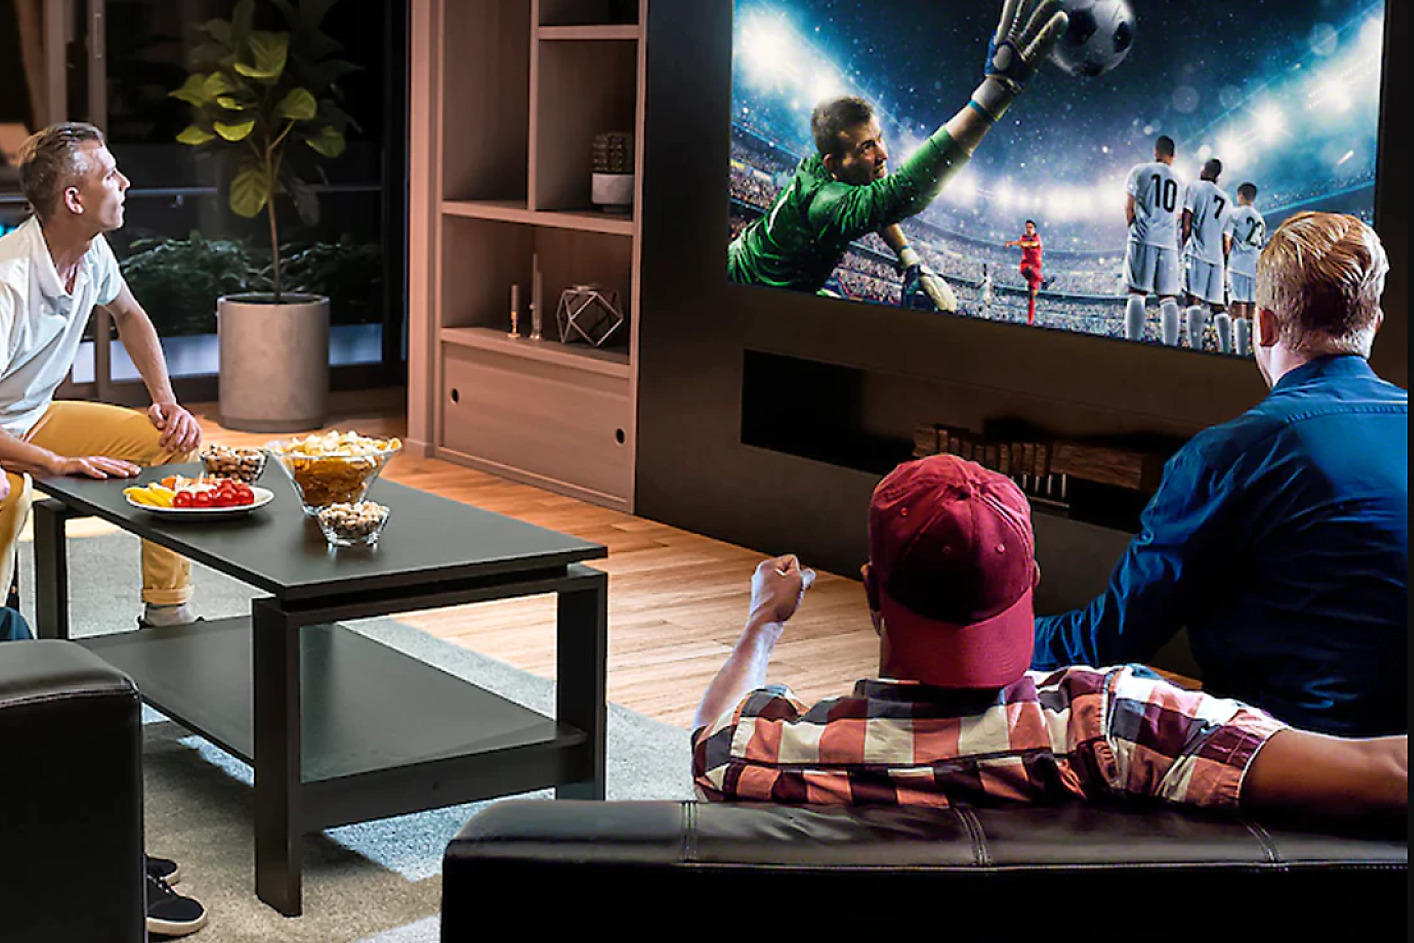 Три человека в гостиной смотрят телевизор, на экране которого показан прыгающий за мячом вратарь.